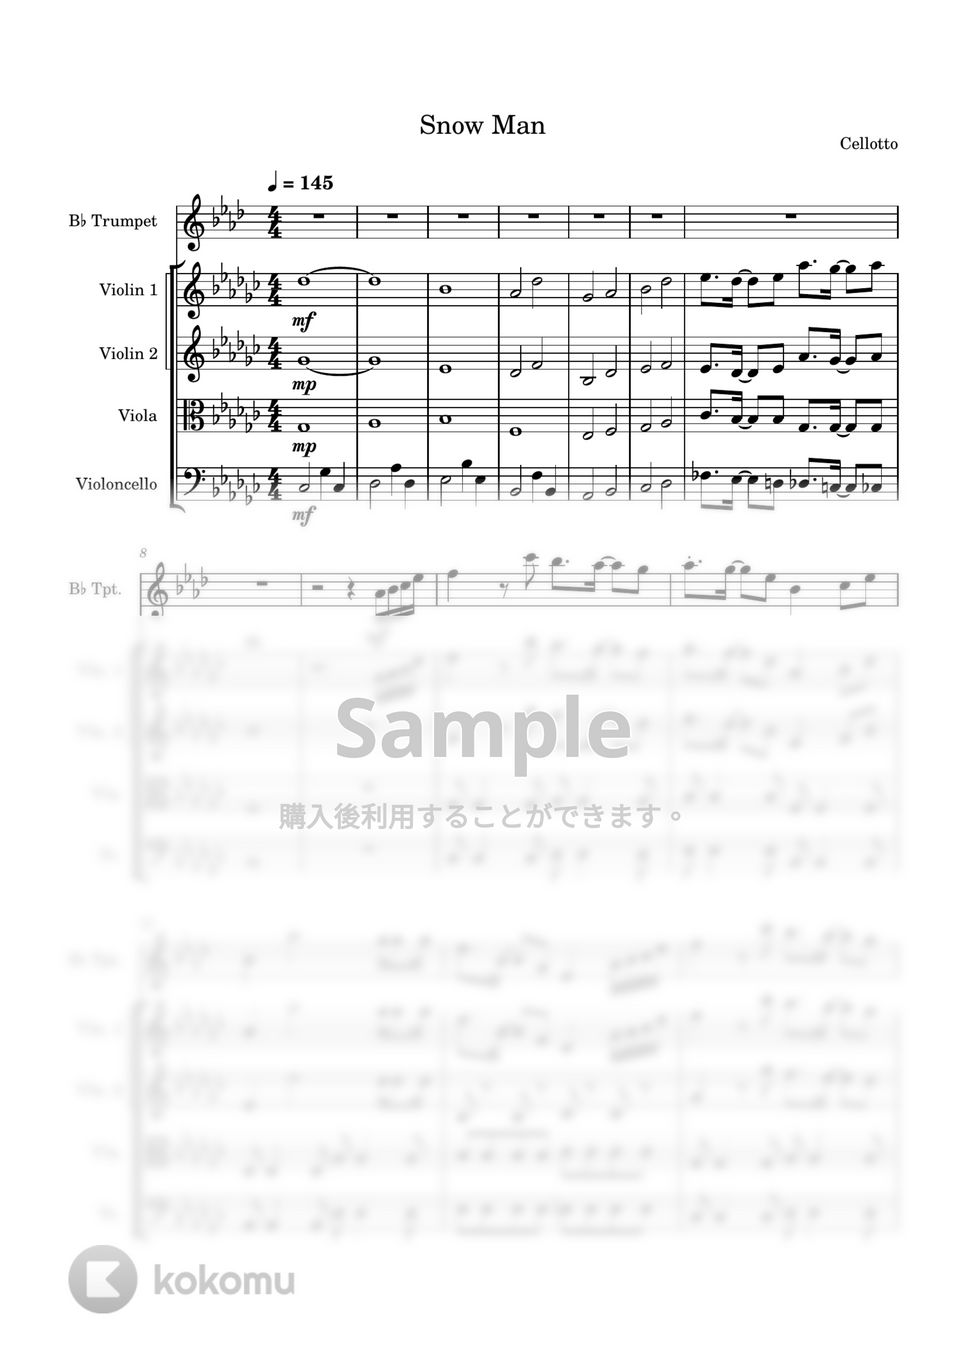 Snow Man - ひらりと桜 (弦楽四重奏&トランペット) by Cellotto